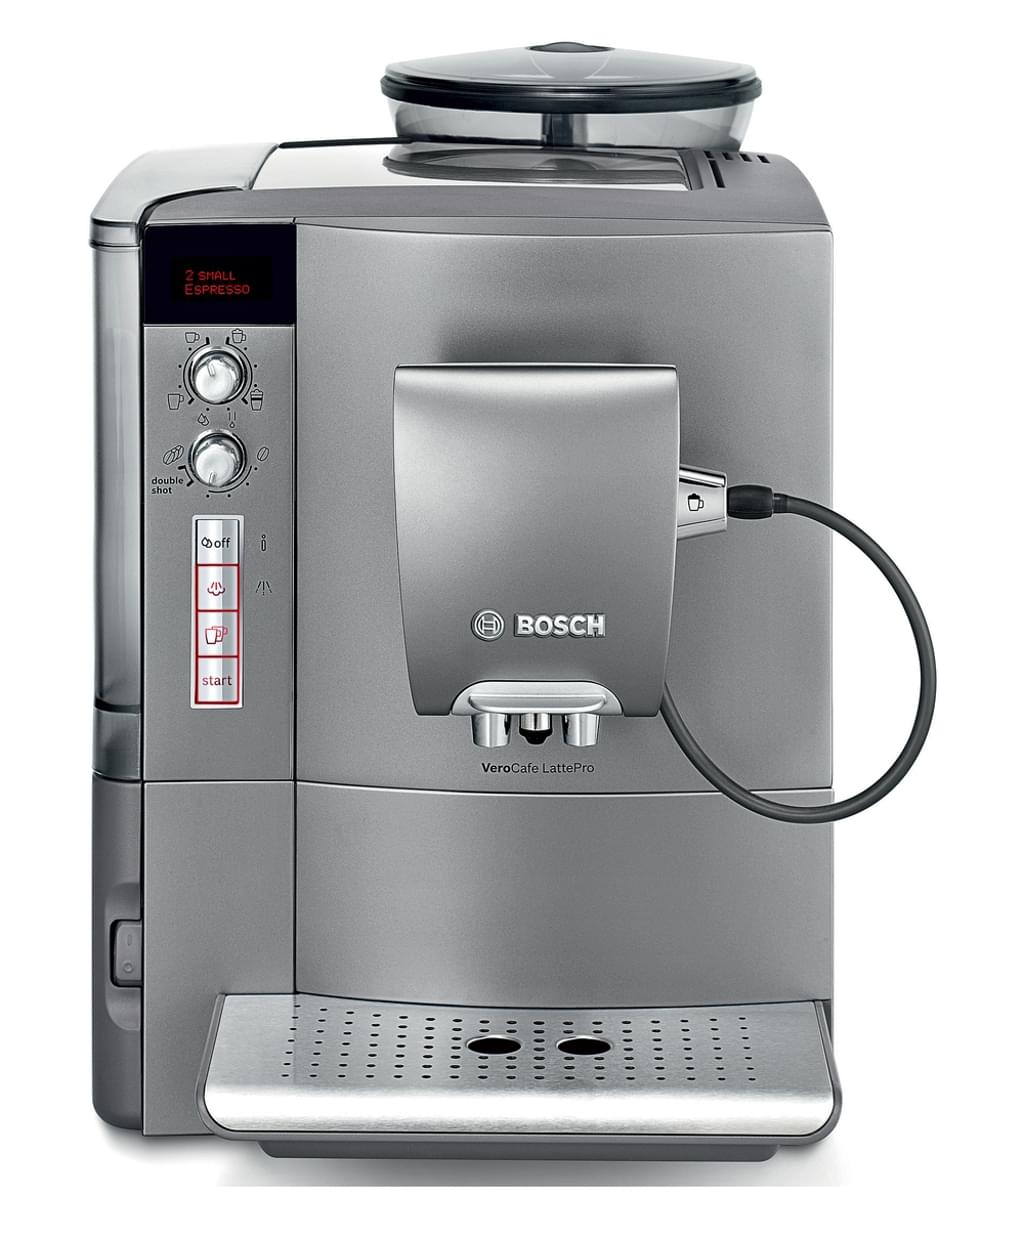 Bosch TES50621RW espressoapparaat. Bron: Bosch.